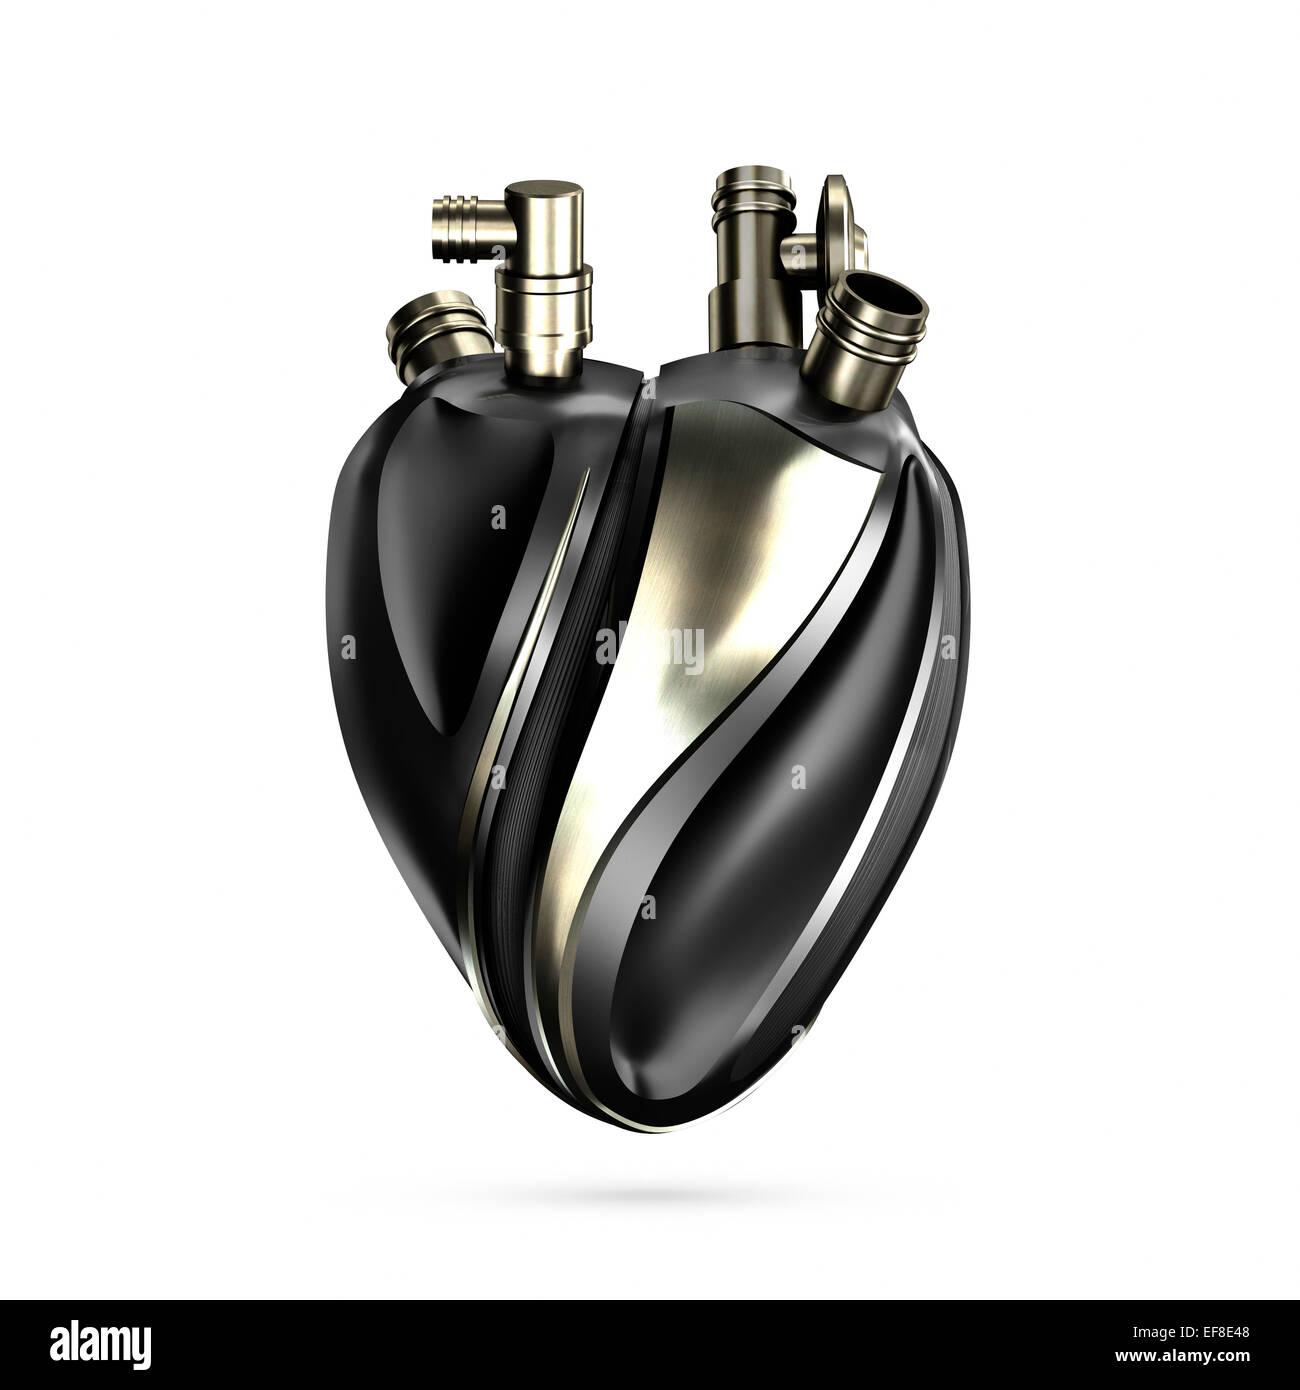 Metal heart comme un élément de la machine, conceptuel 3D illustration isolé sur fond blanc Banque D'Images